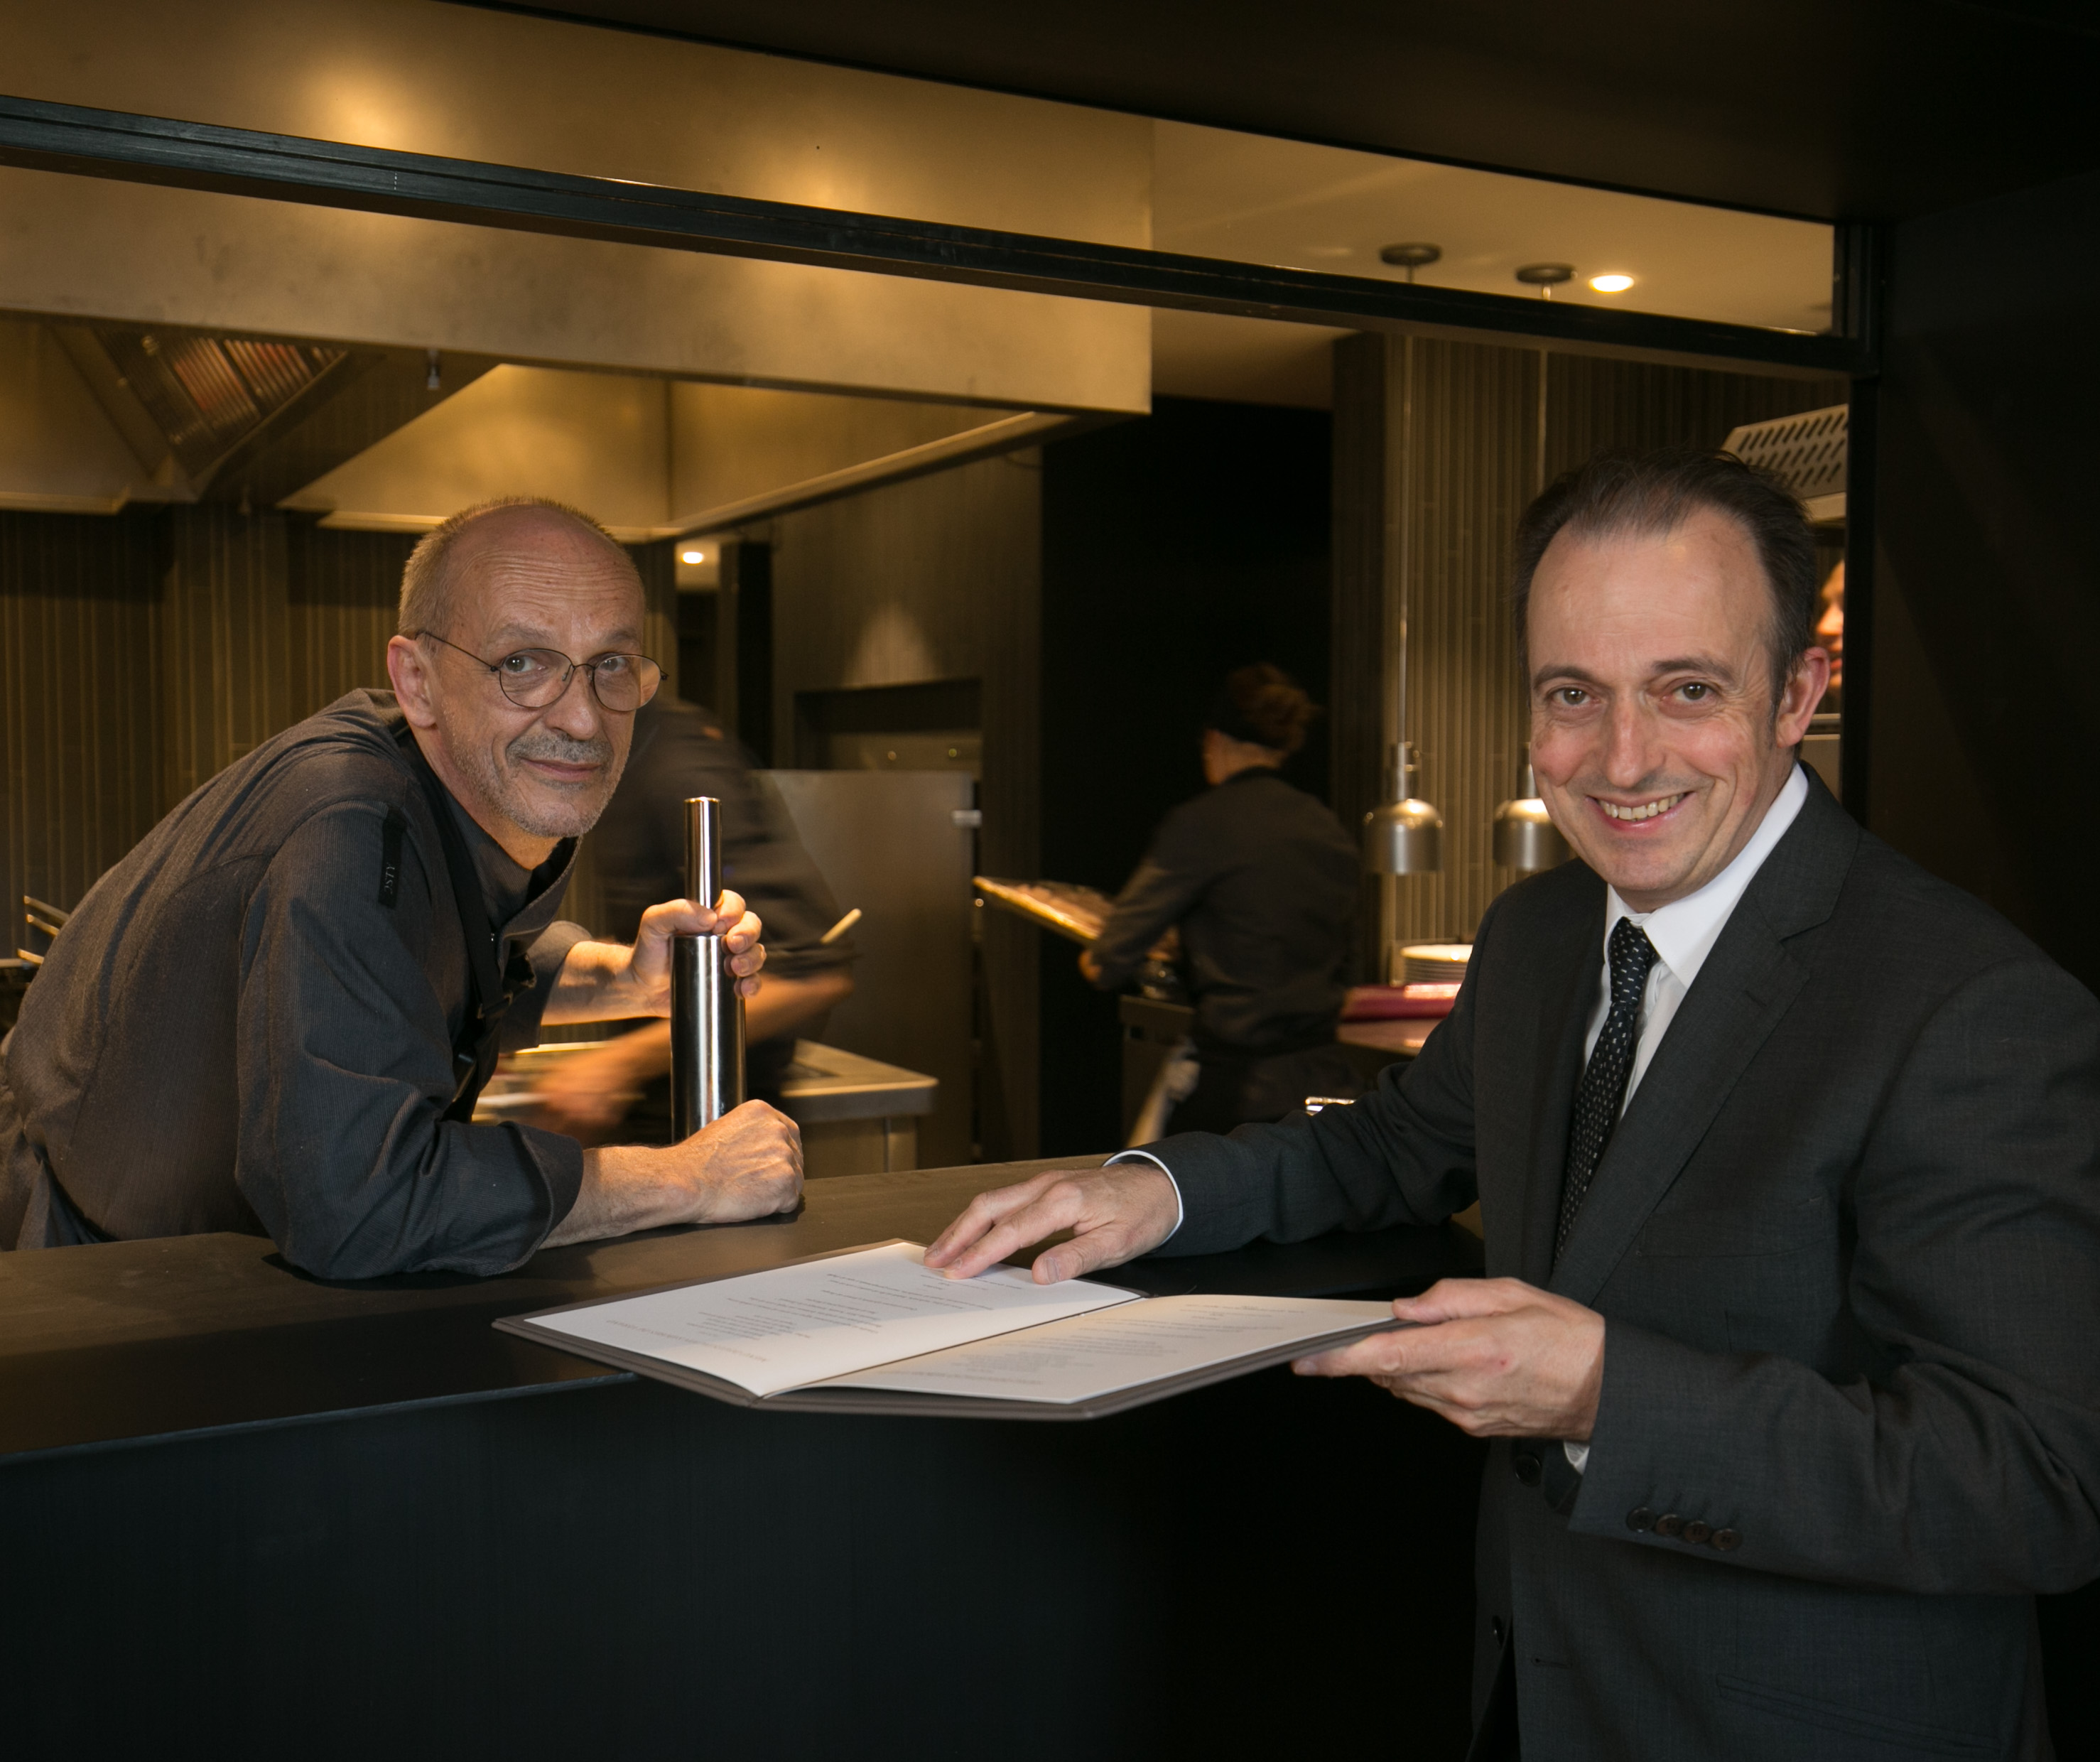 El Castell Peralada Restaurant, amb una estrella Michelin, reobrirà el 10 de setembre